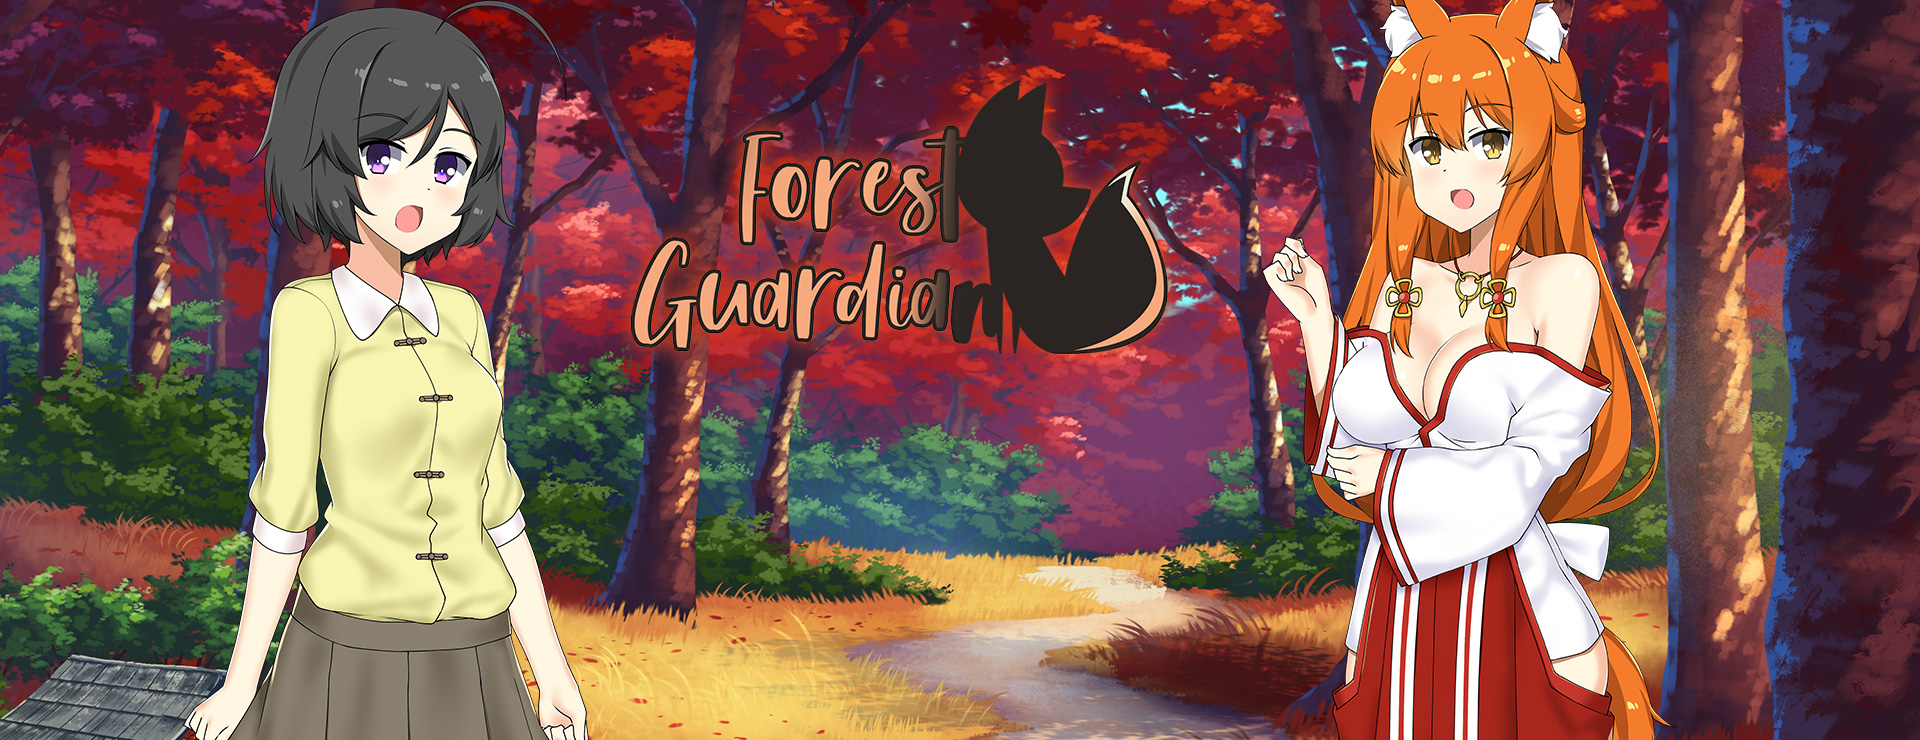 Forest Guardian - ビジュアルノベル ゲーム